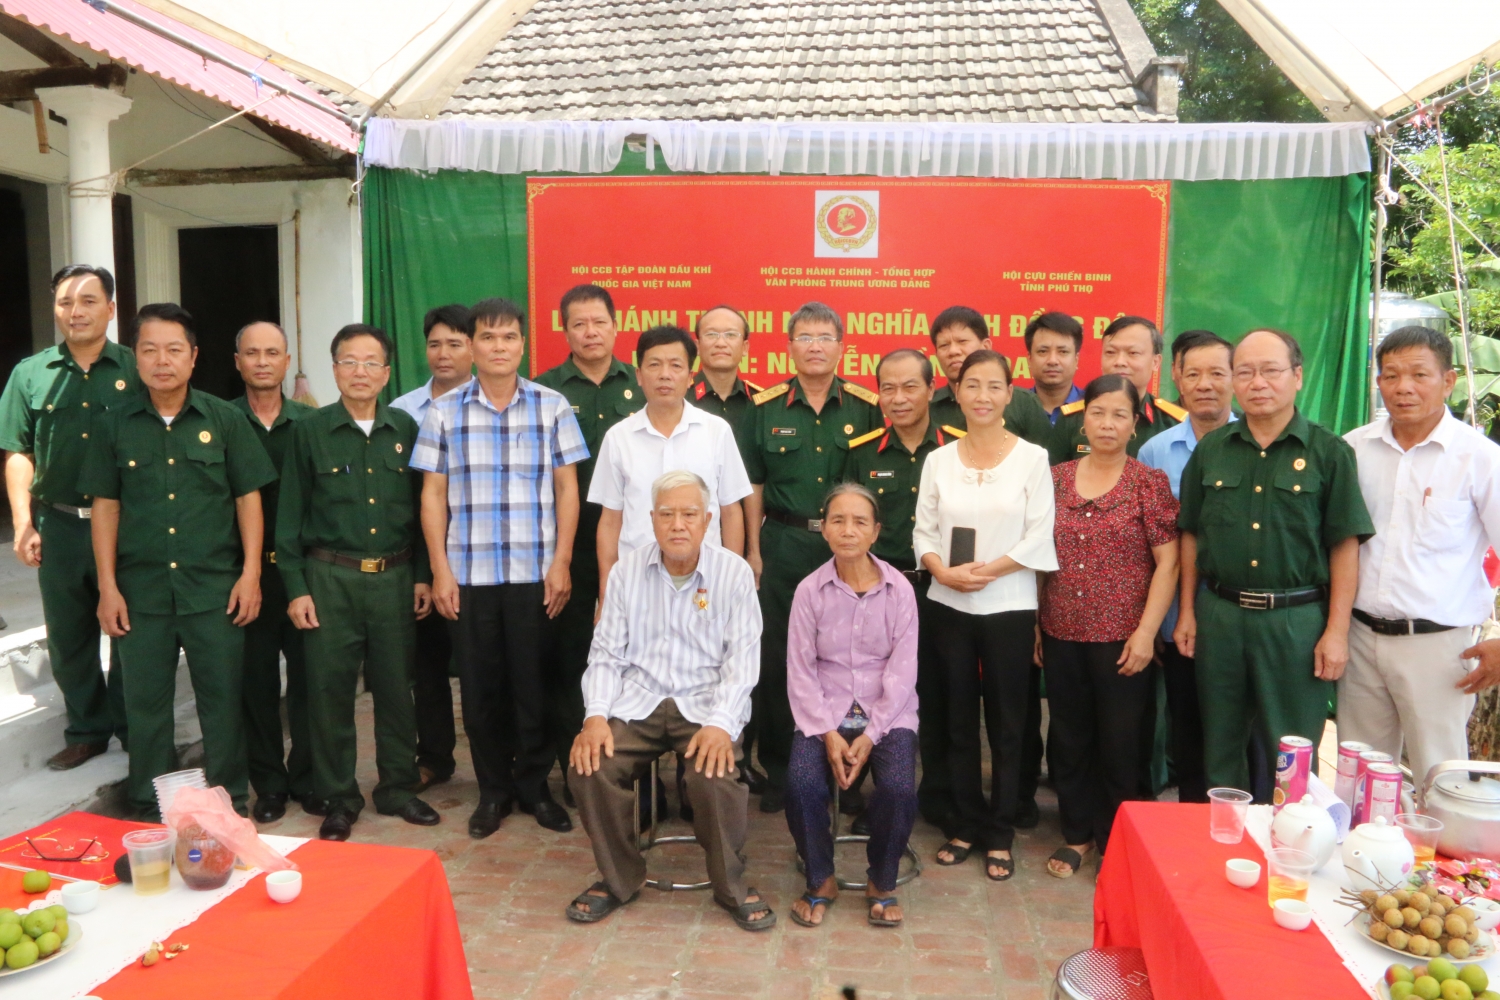 Hội CCB Tập đoàn thăm, tặng quà thương bệnh binh và hỗ trợ xây nhà nghĩa tình đồng đội tại tỉnh Phú Thọ